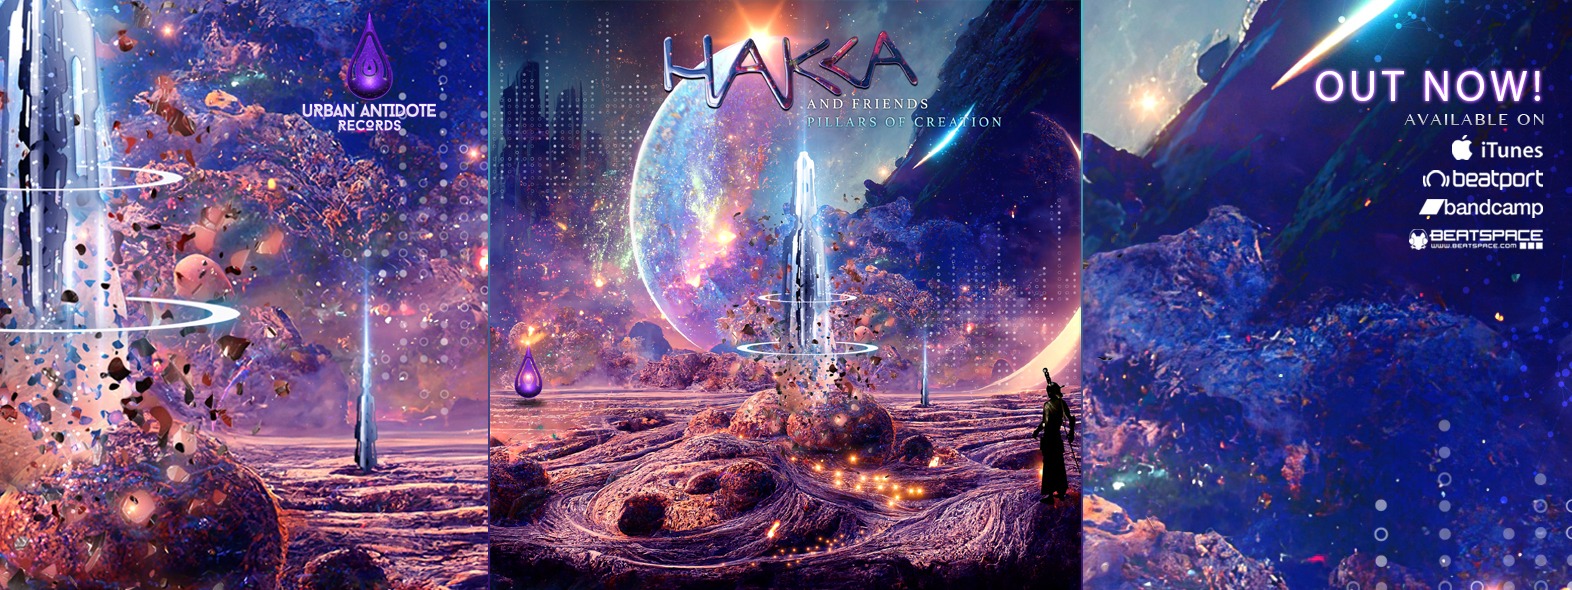 Hakka – Pillars of Creation